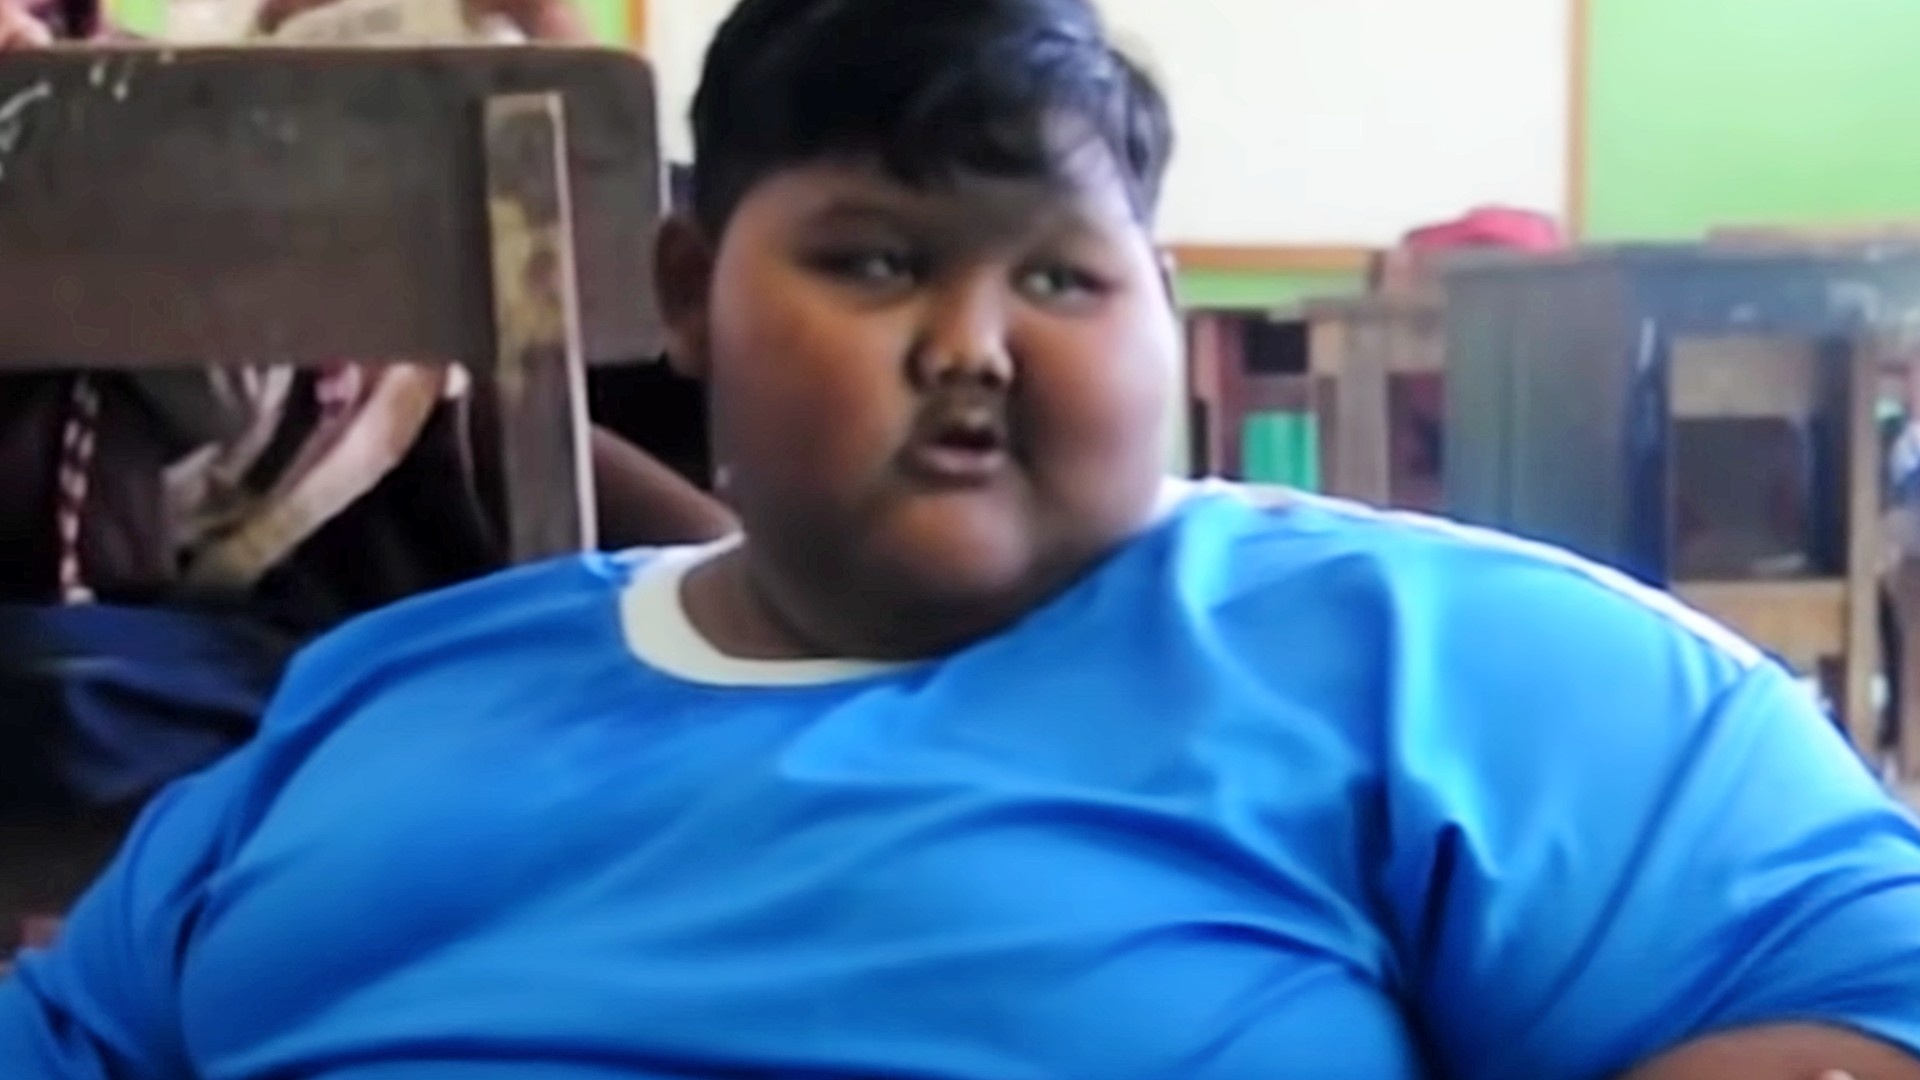 Лицо толстого мальчика